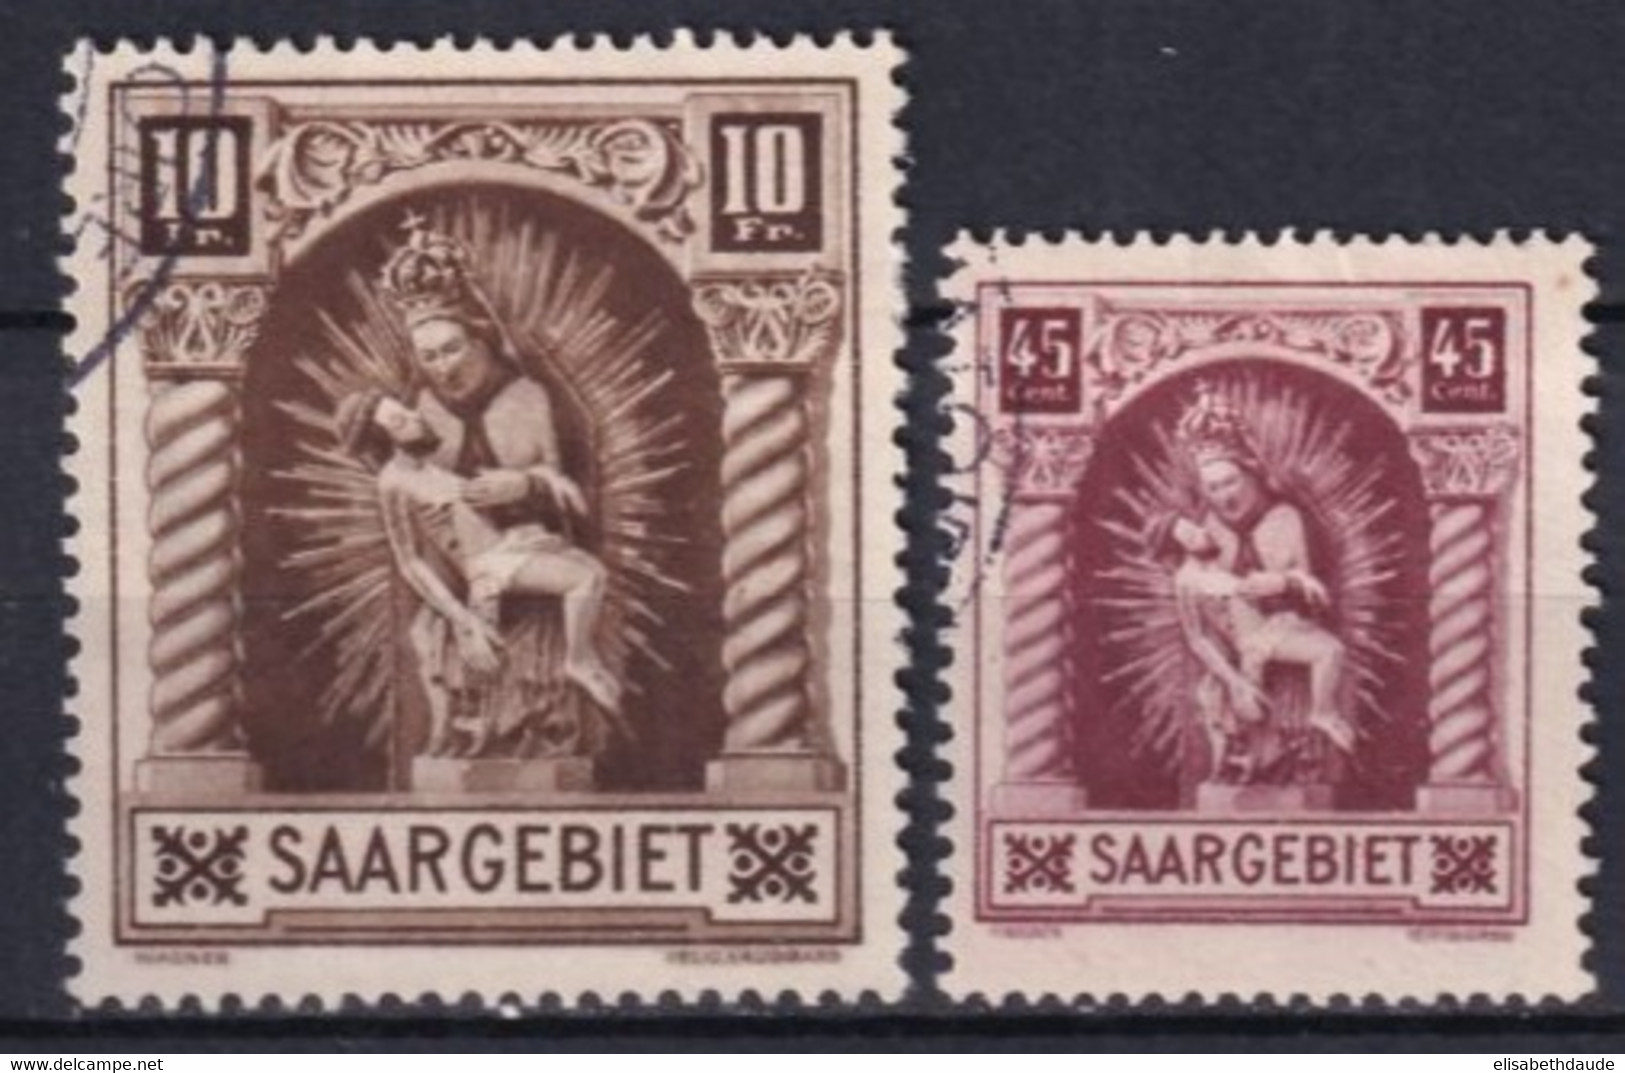 SAAR / SARRE - 1925 - YT N° 101/102 OBLITERES - COTE = 42 EUR. - Gebruikt